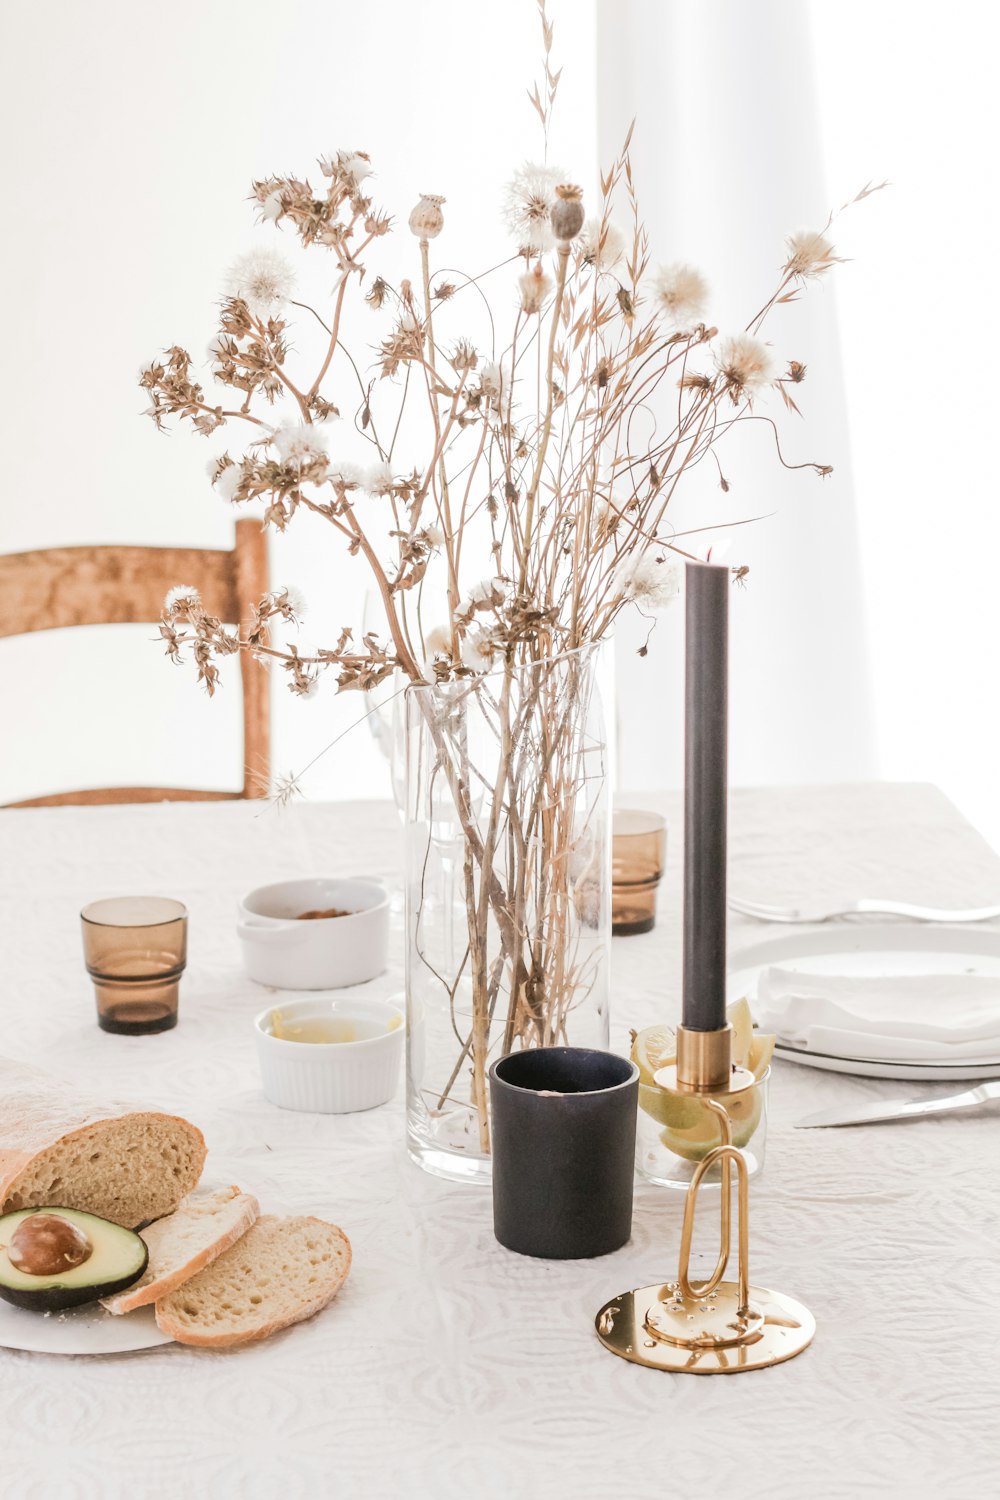 pane e fiori posti sul tavolo